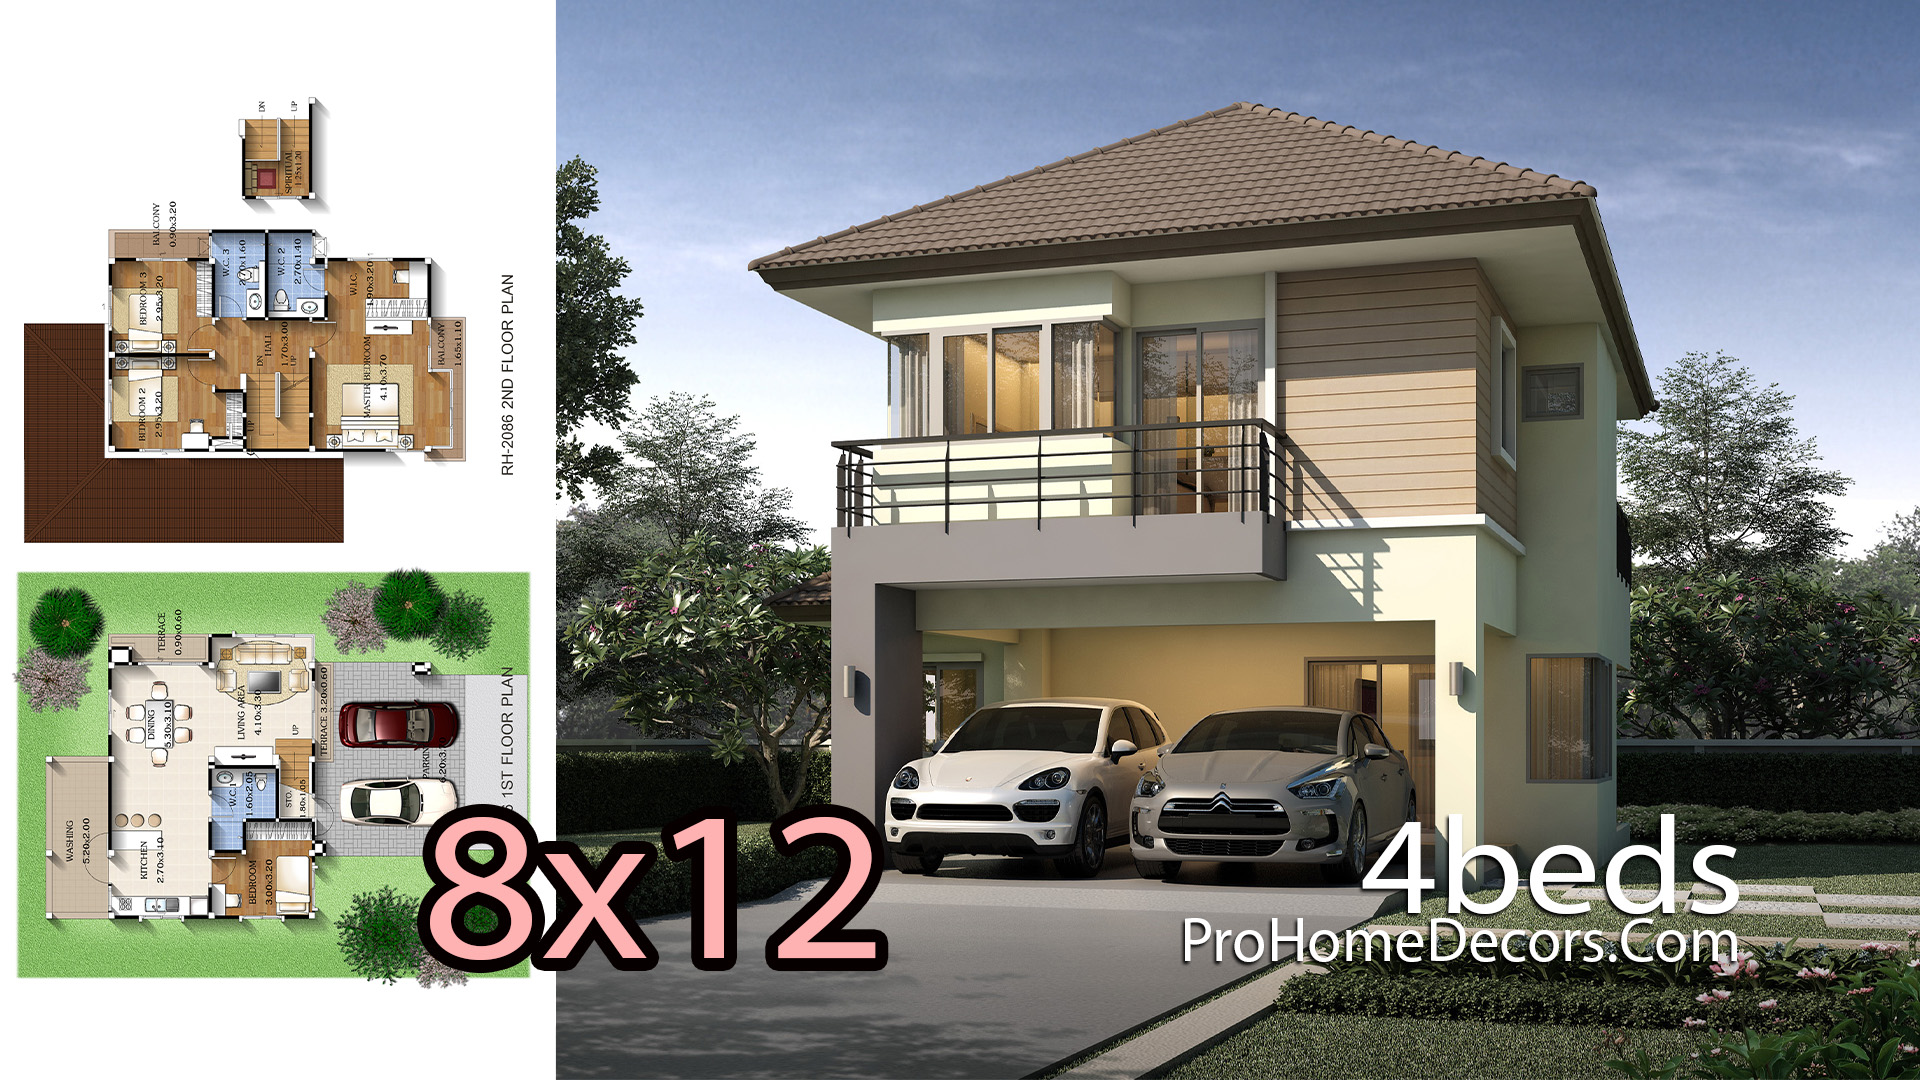 4 Bedrooms House Design 8x12 meters